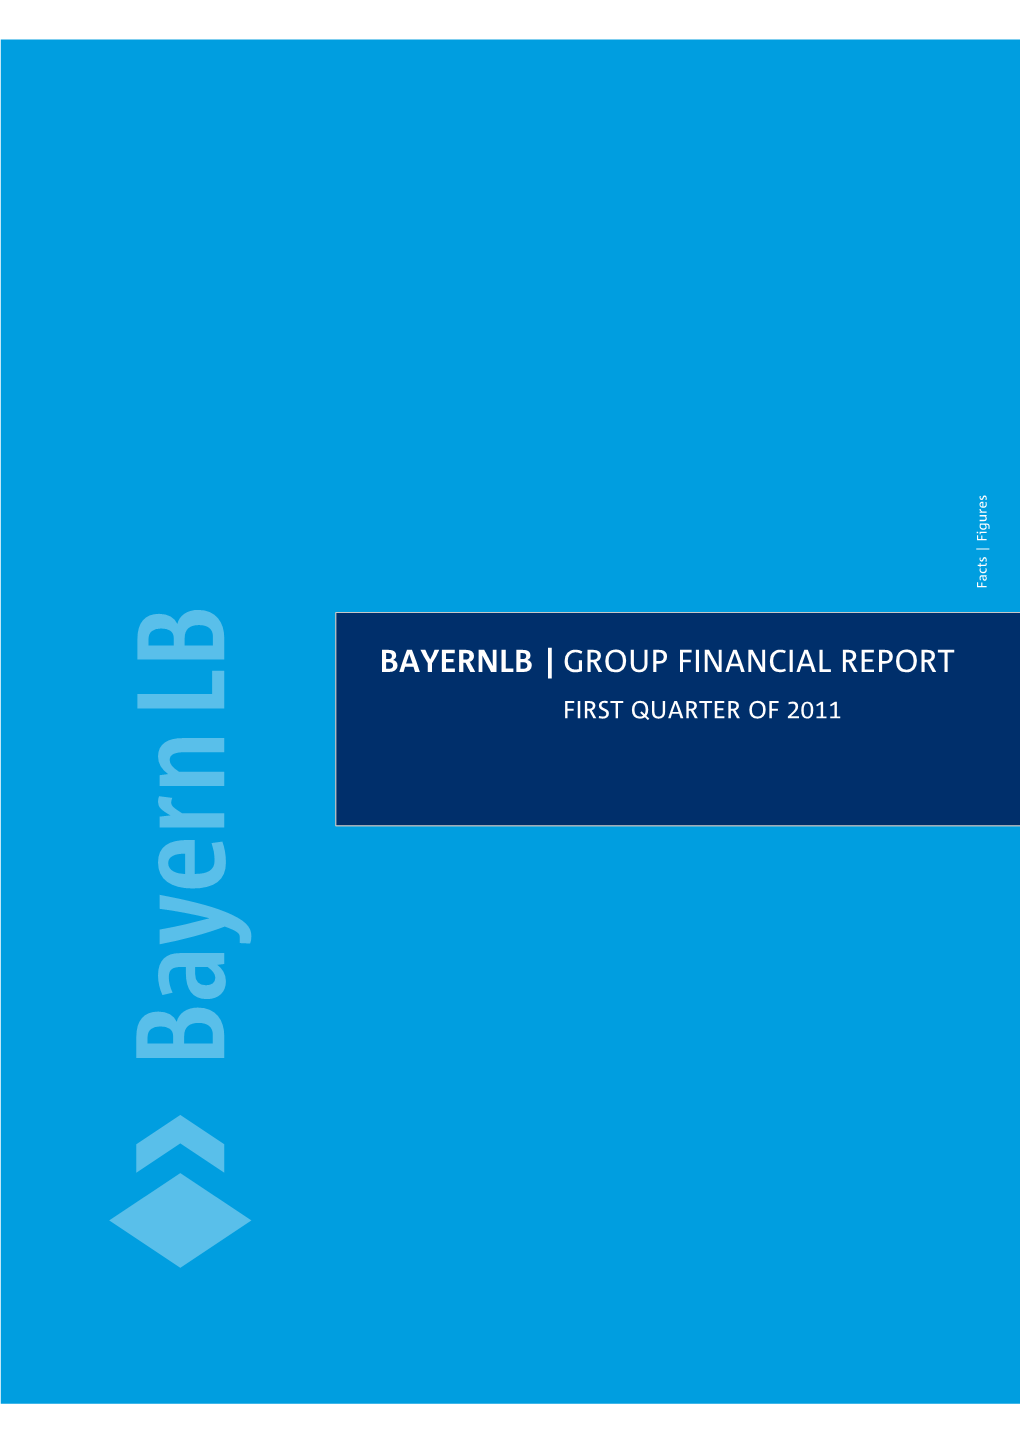 Geschäftsbericht 2010 Konzernabschluss Bayernlb | Group